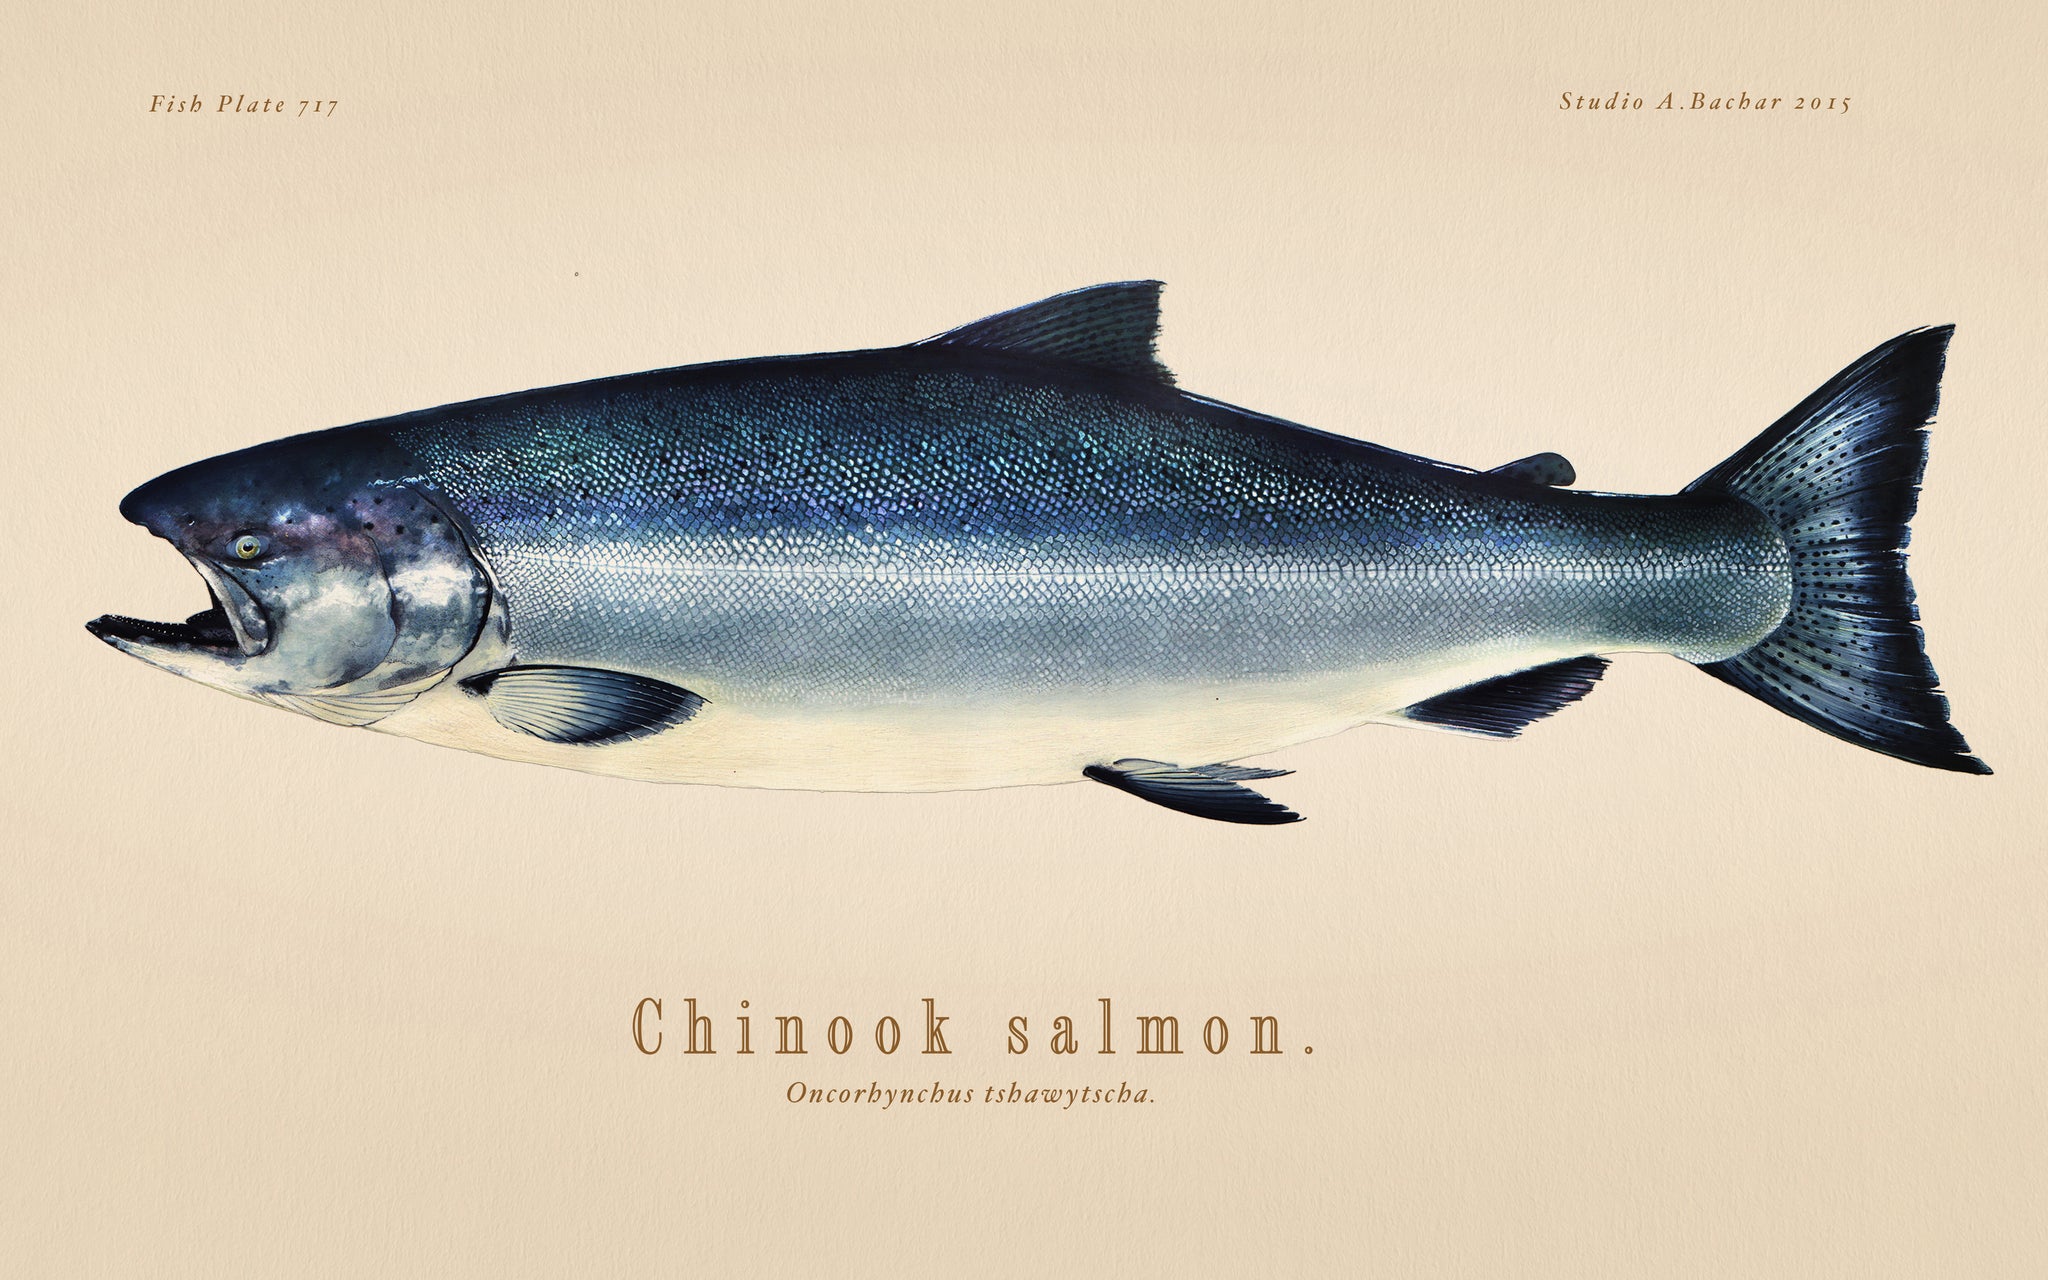 King Salmon Illustration 123